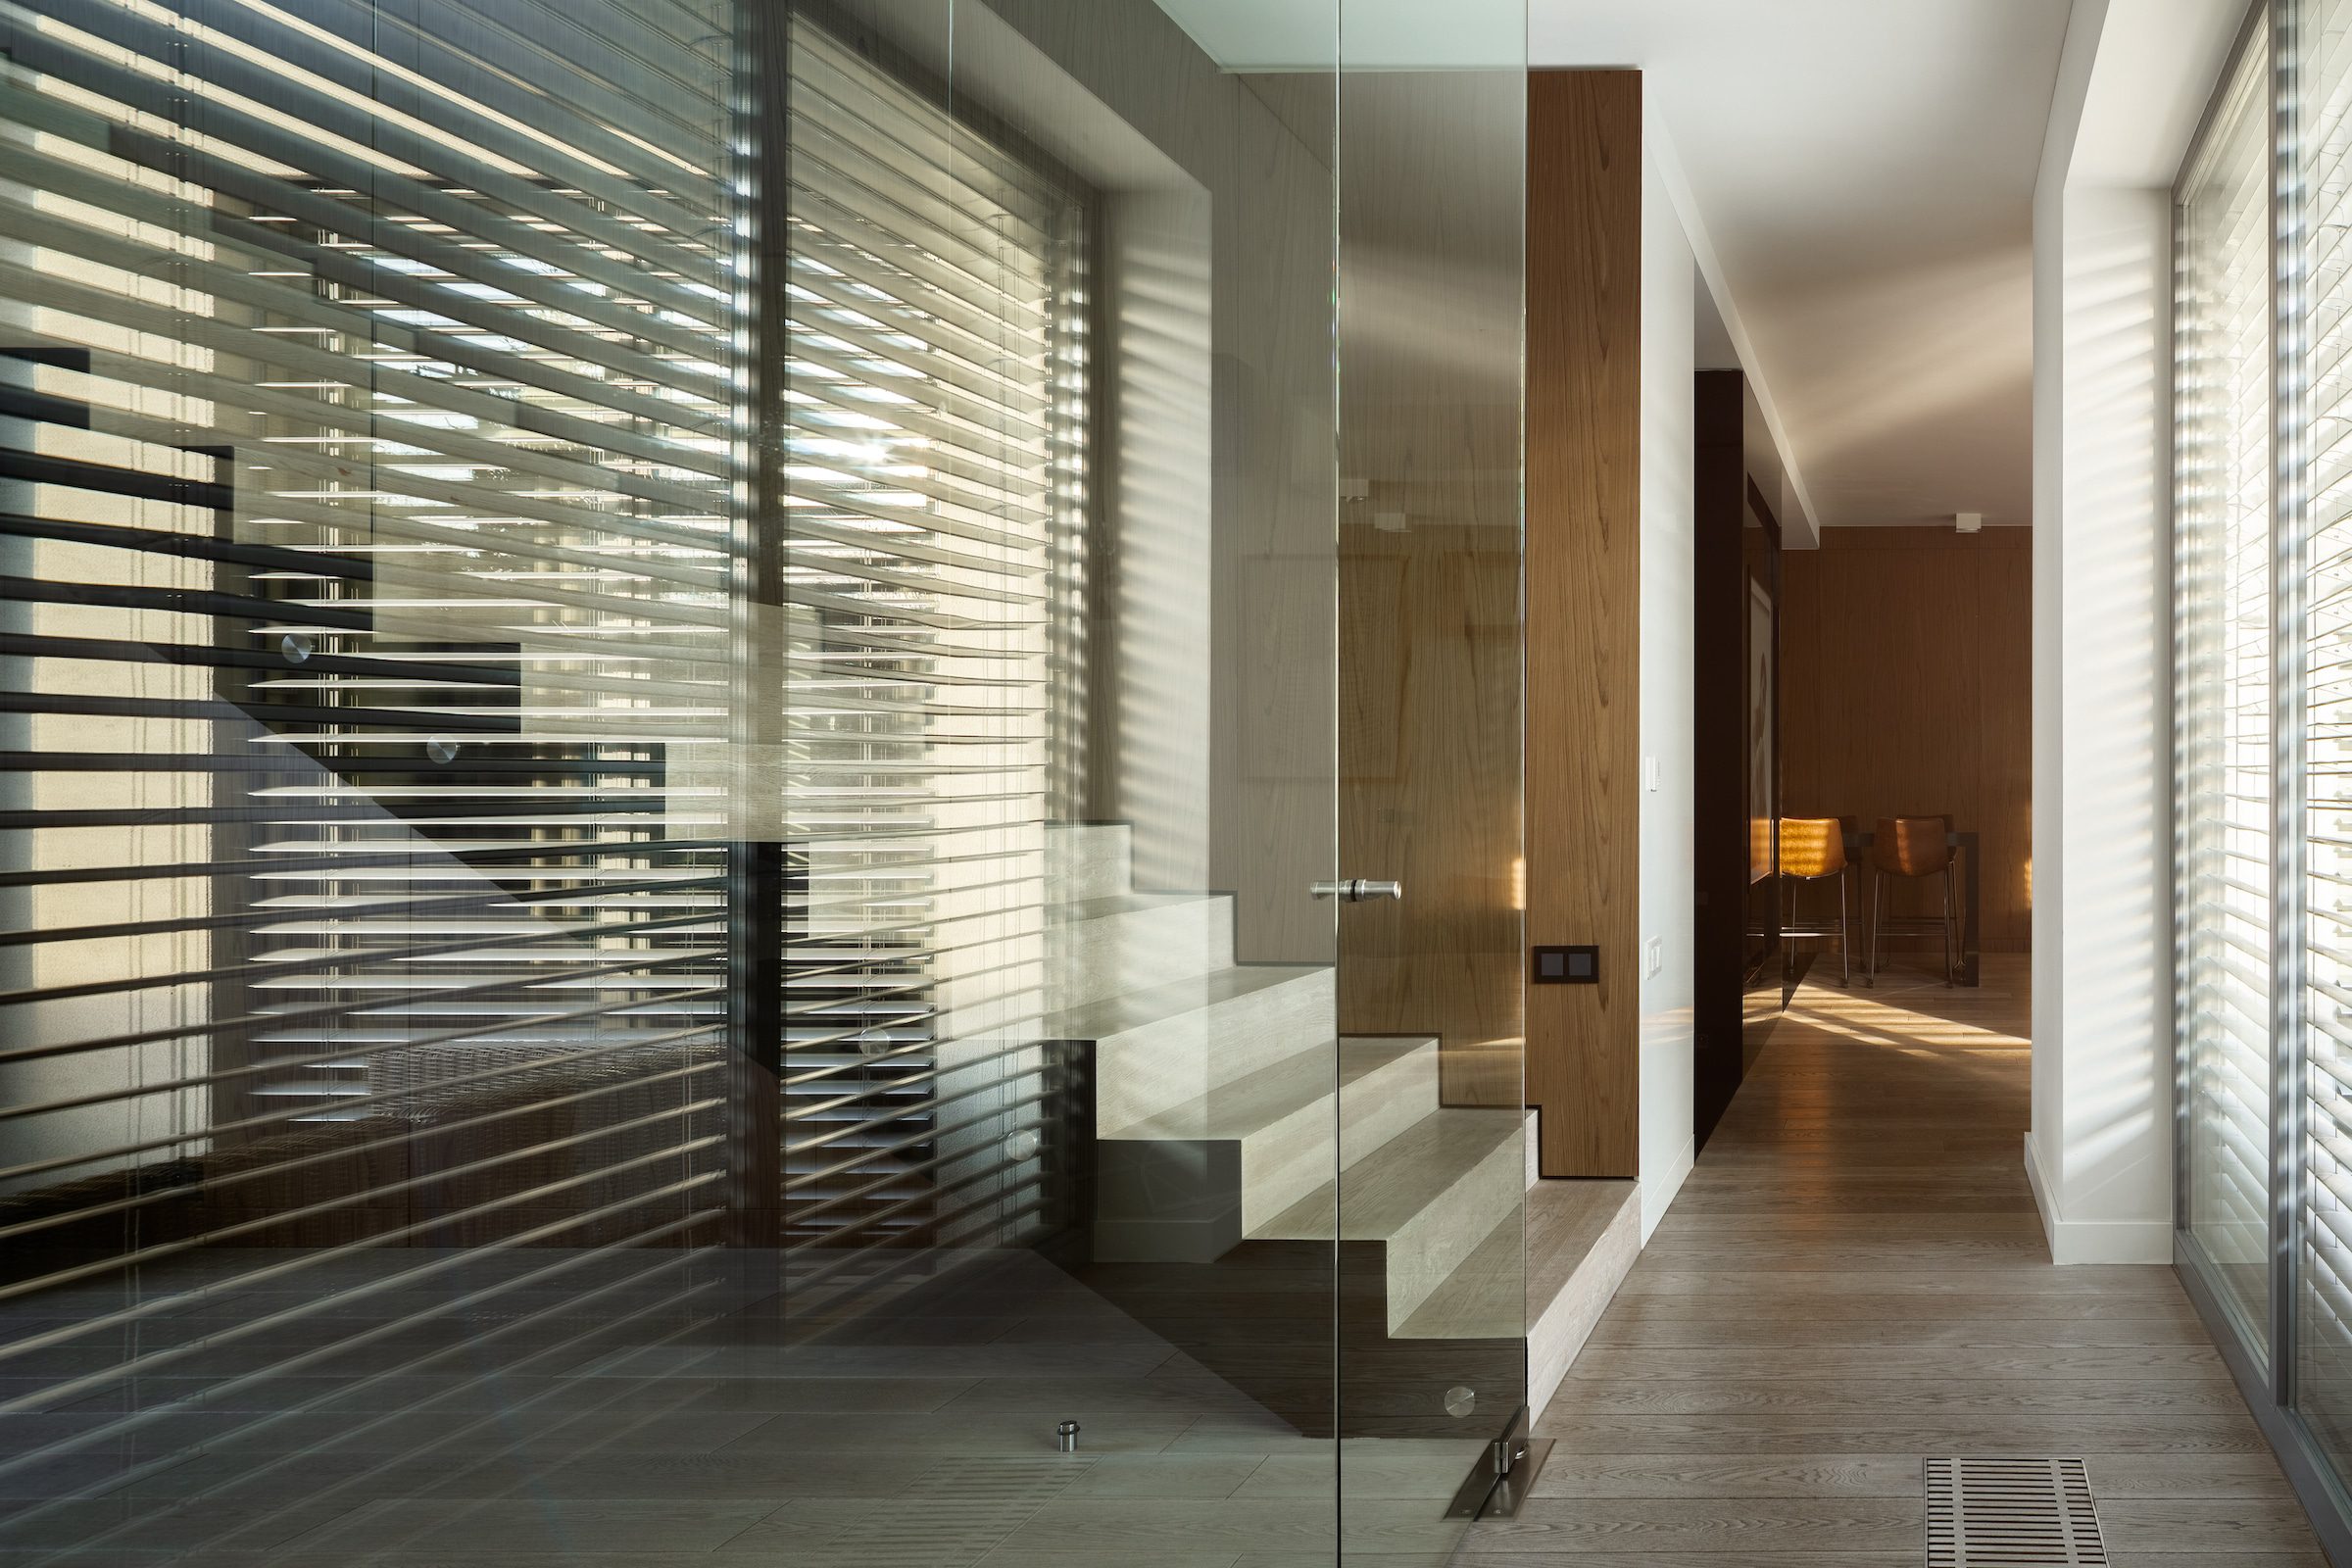 integral blinds for sliding doors fitted inside a room divider